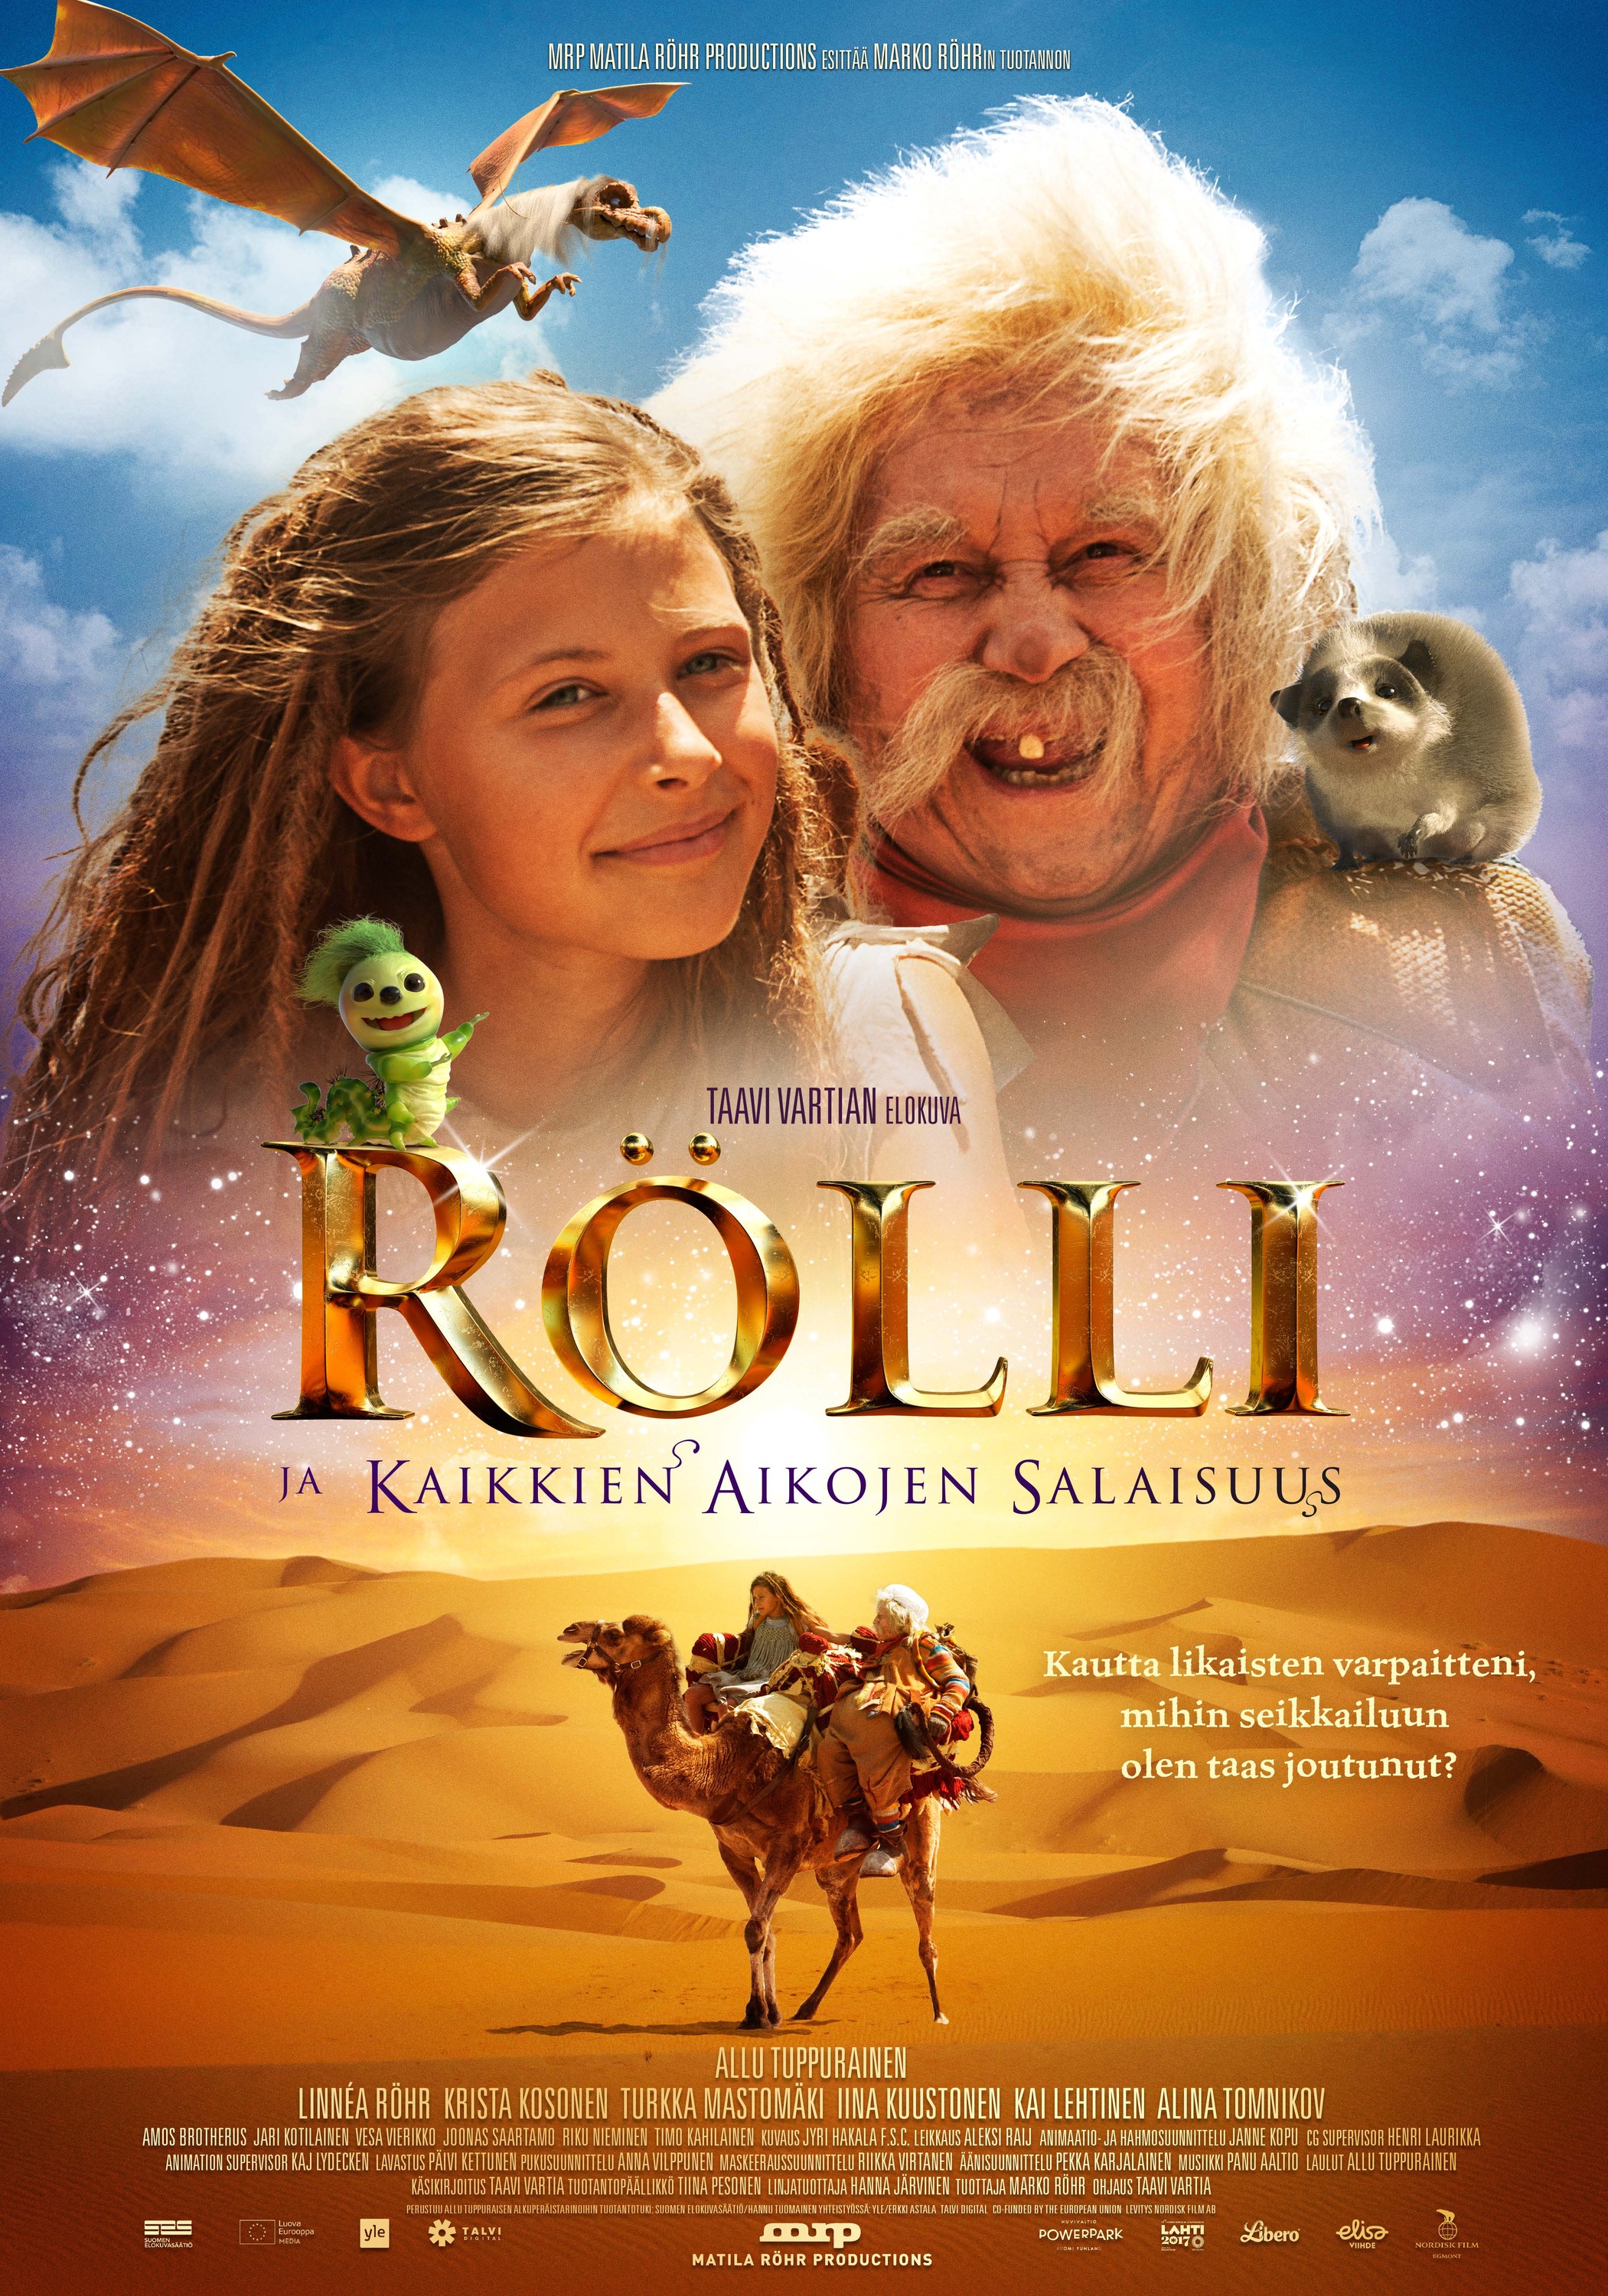 Mega Sized Movie Poster Image for Rölli ja kaikkien aikojen salaisuus 